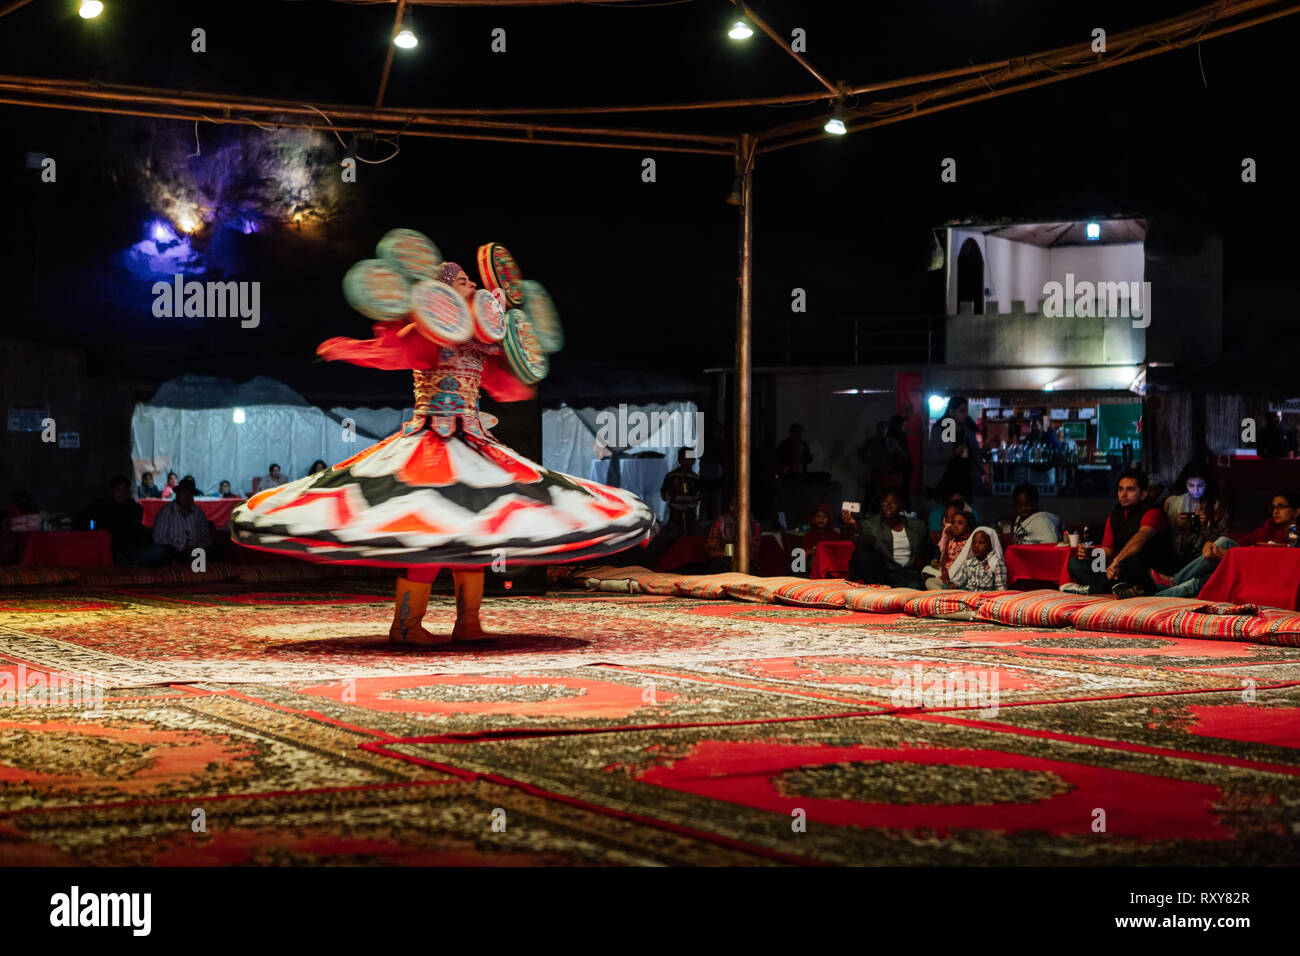 Dec 24, 2013 - die tanzenden Derwische von Al Tanoura Folklore Truppe in Dubai, Vereinigte Arabische Emirate. Stockfoto